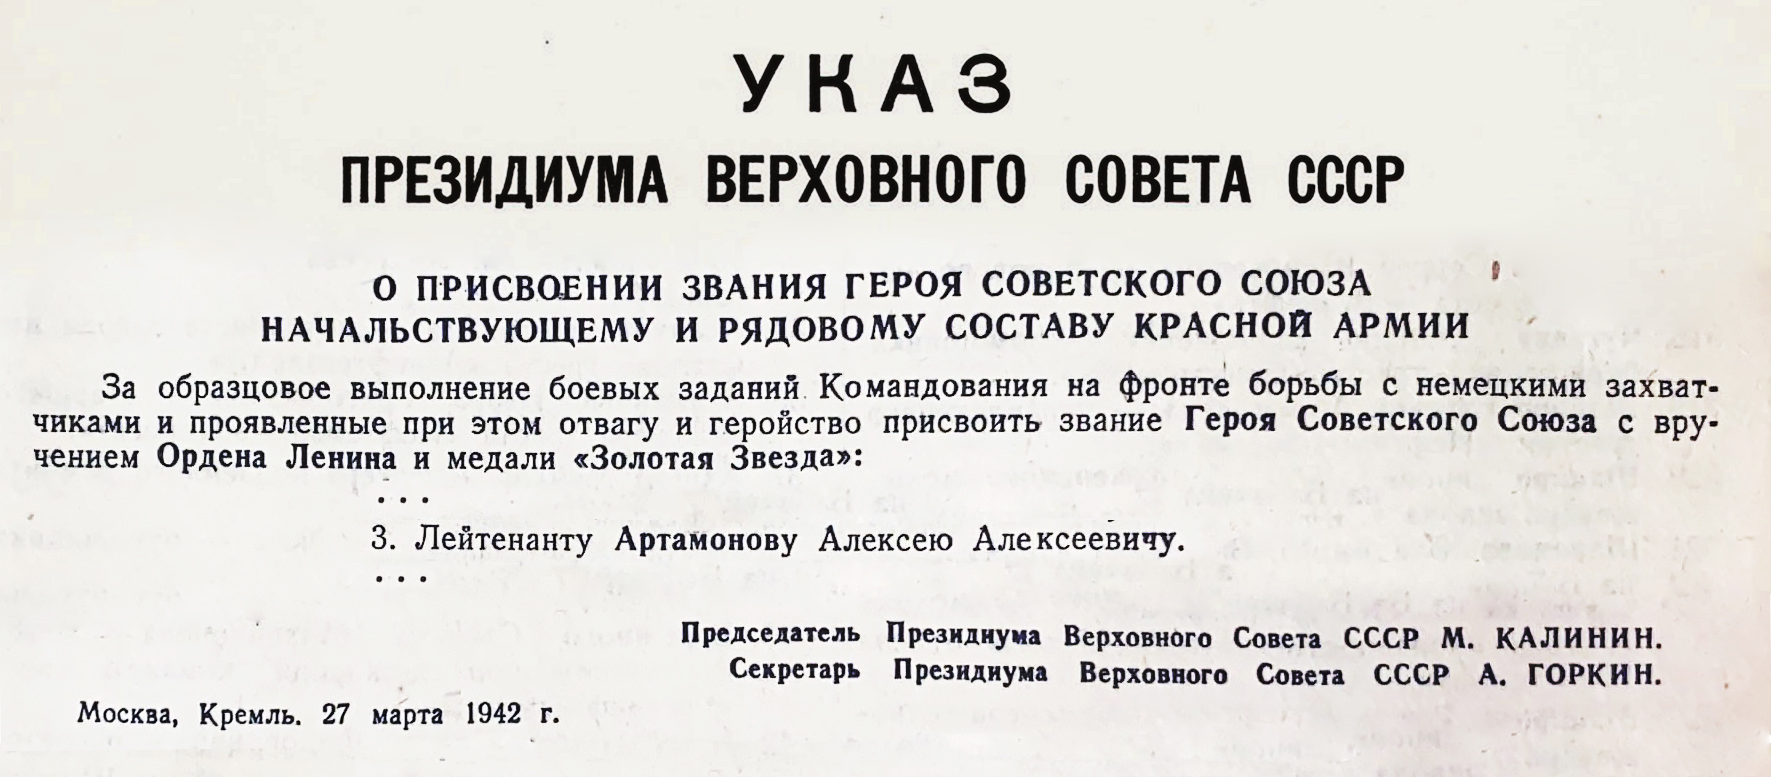 Ведомости Верховного Совета СССР. - 1942 г. - 12 апреля (№ 12). - С. 1